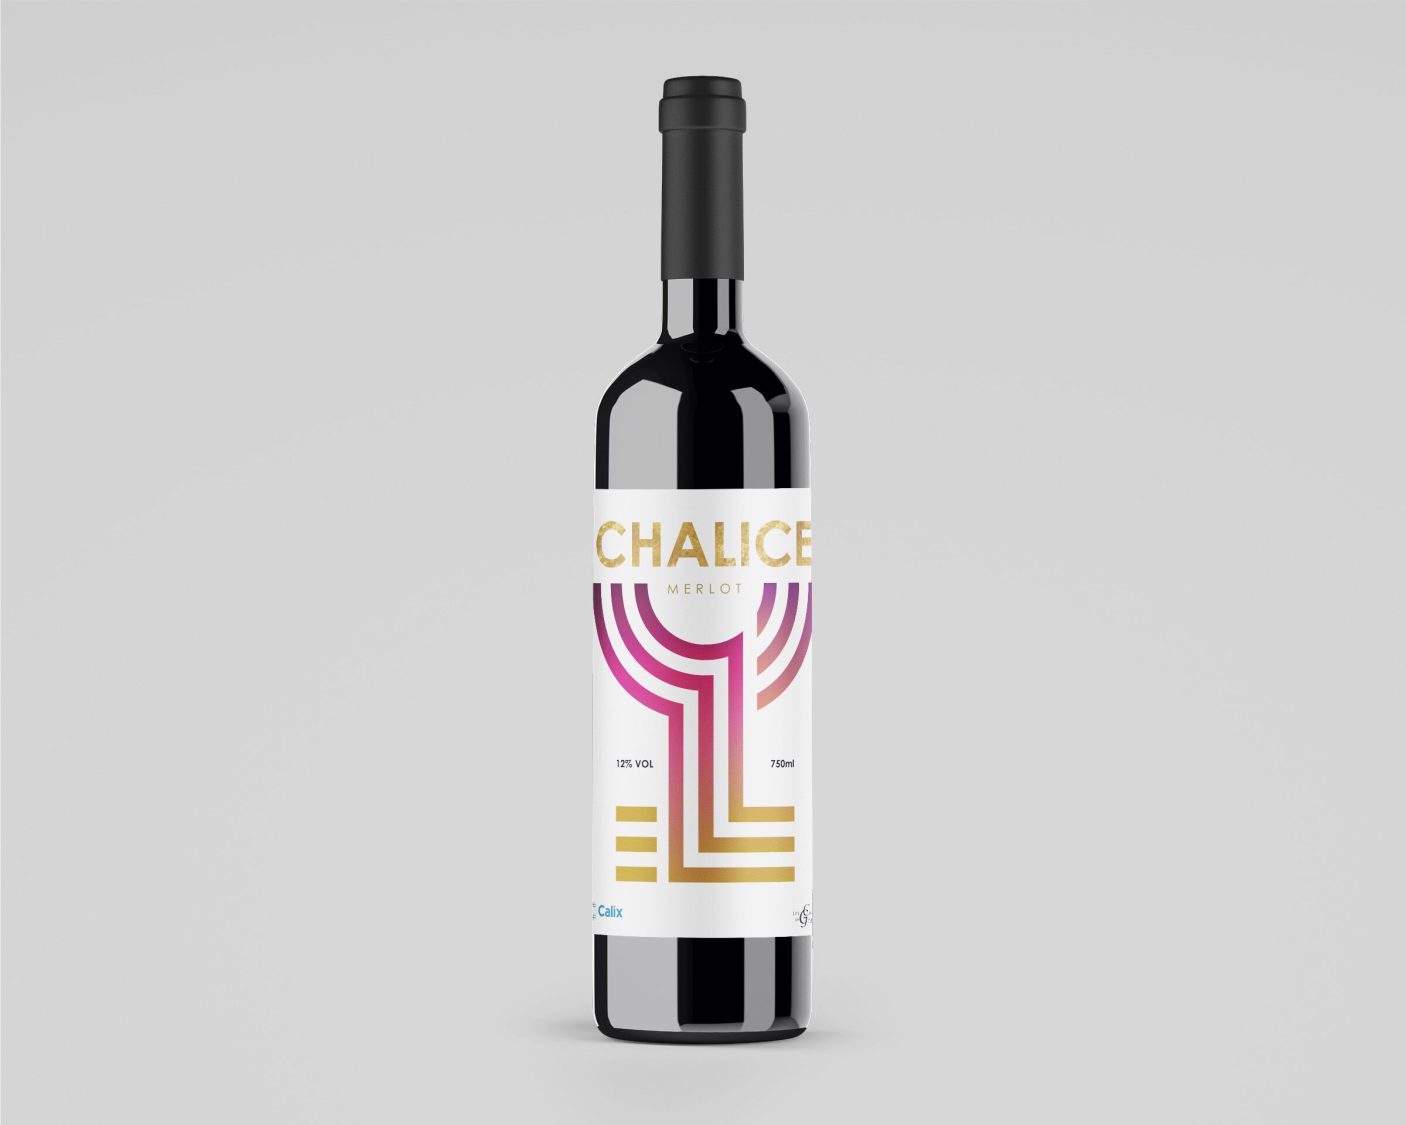 Chalice Merlot, branded wine bottle design